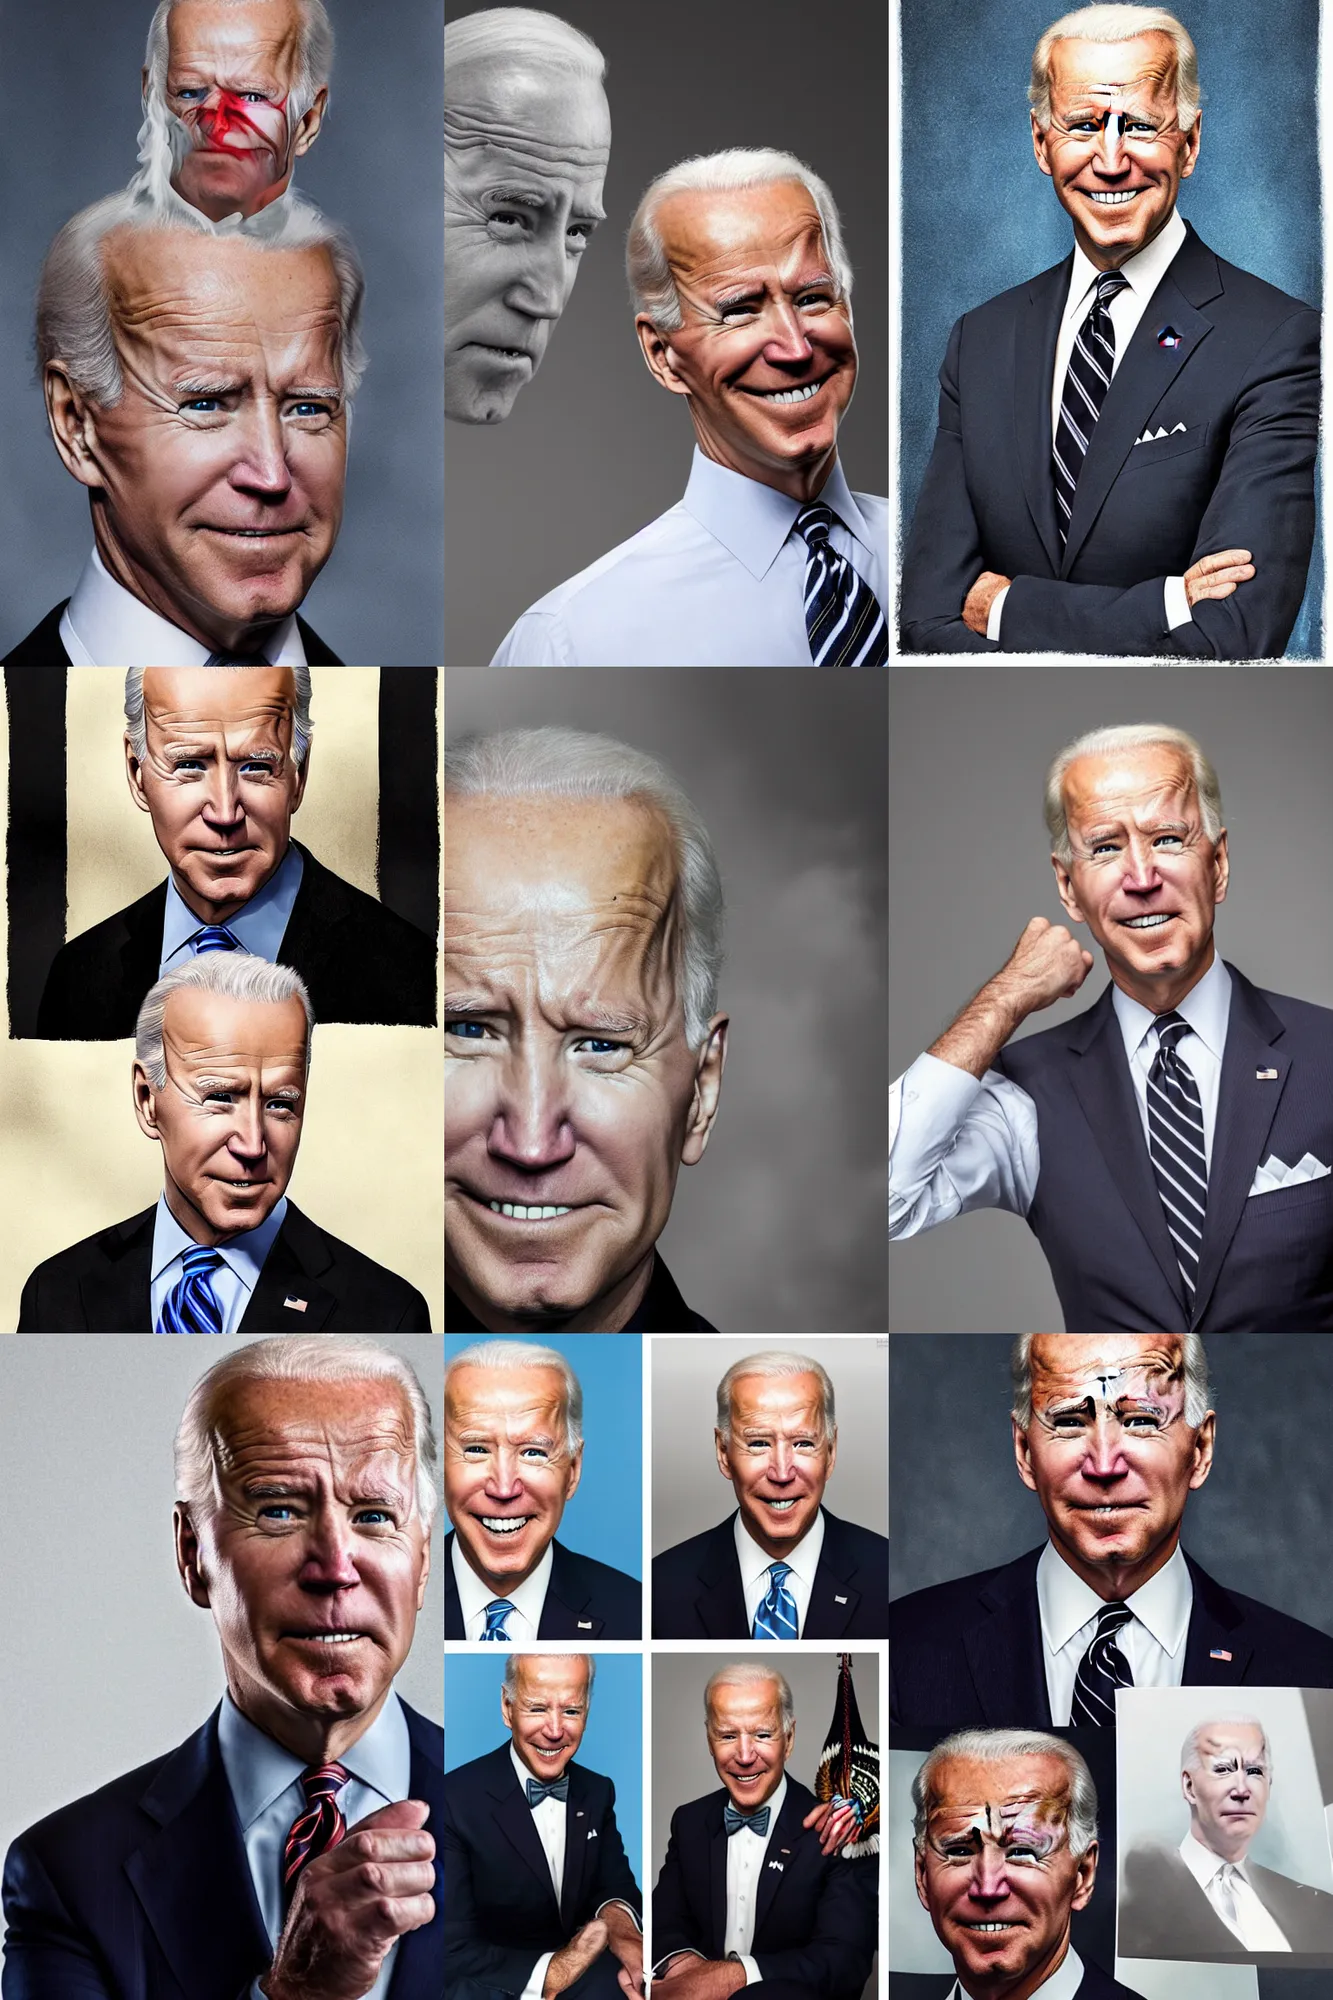 Prompt: photo portrait Joe Biden as Voldemort, The Avengers